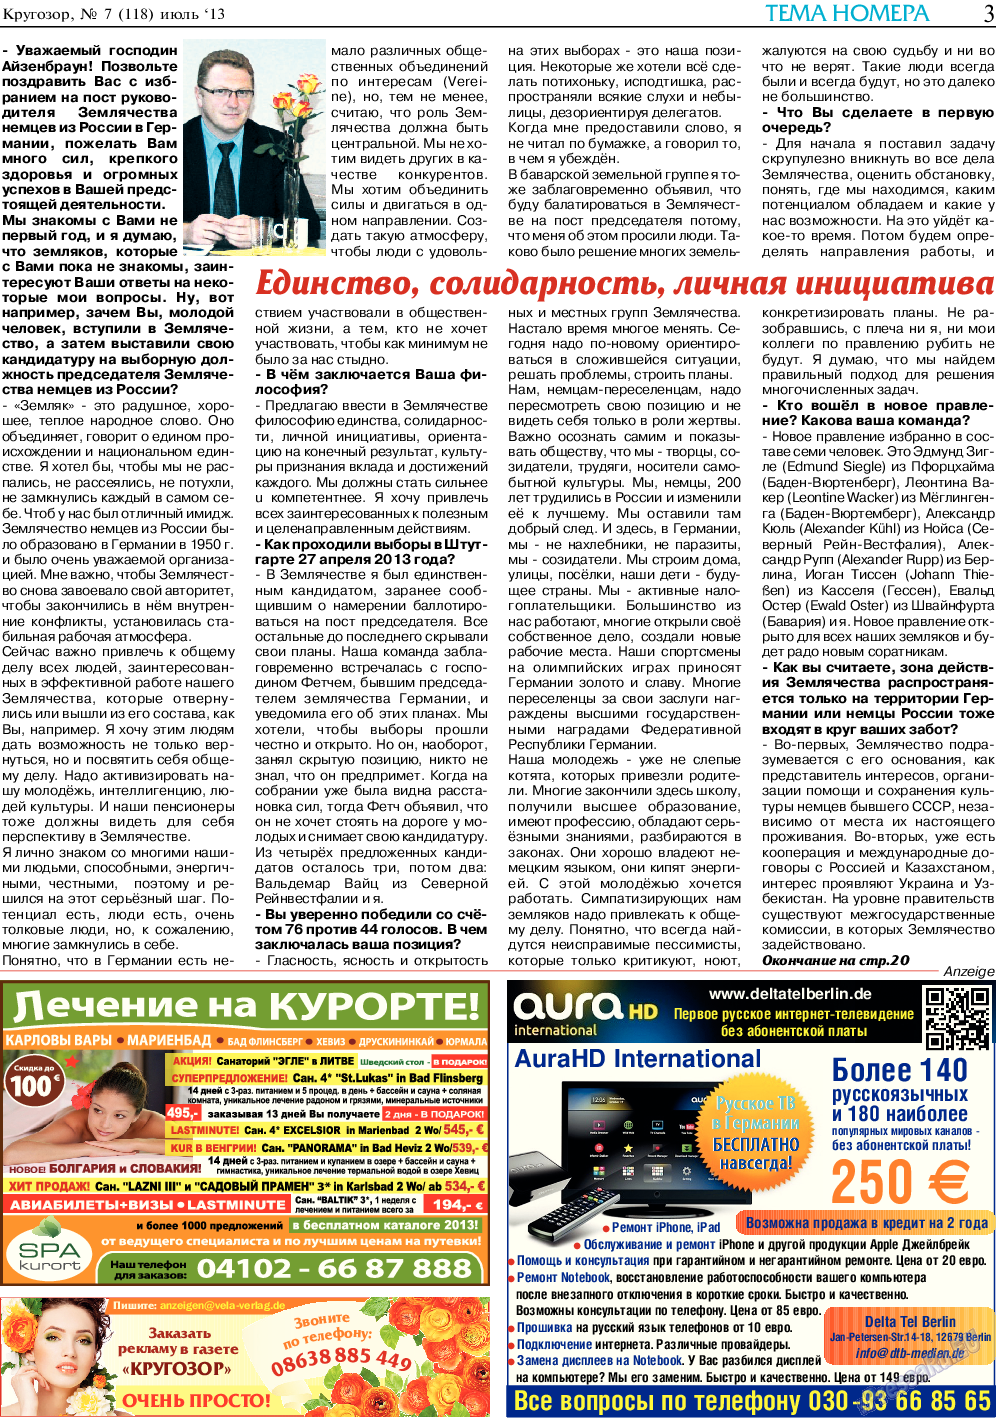 Кругозор, газета. 2013 №7 стр.3